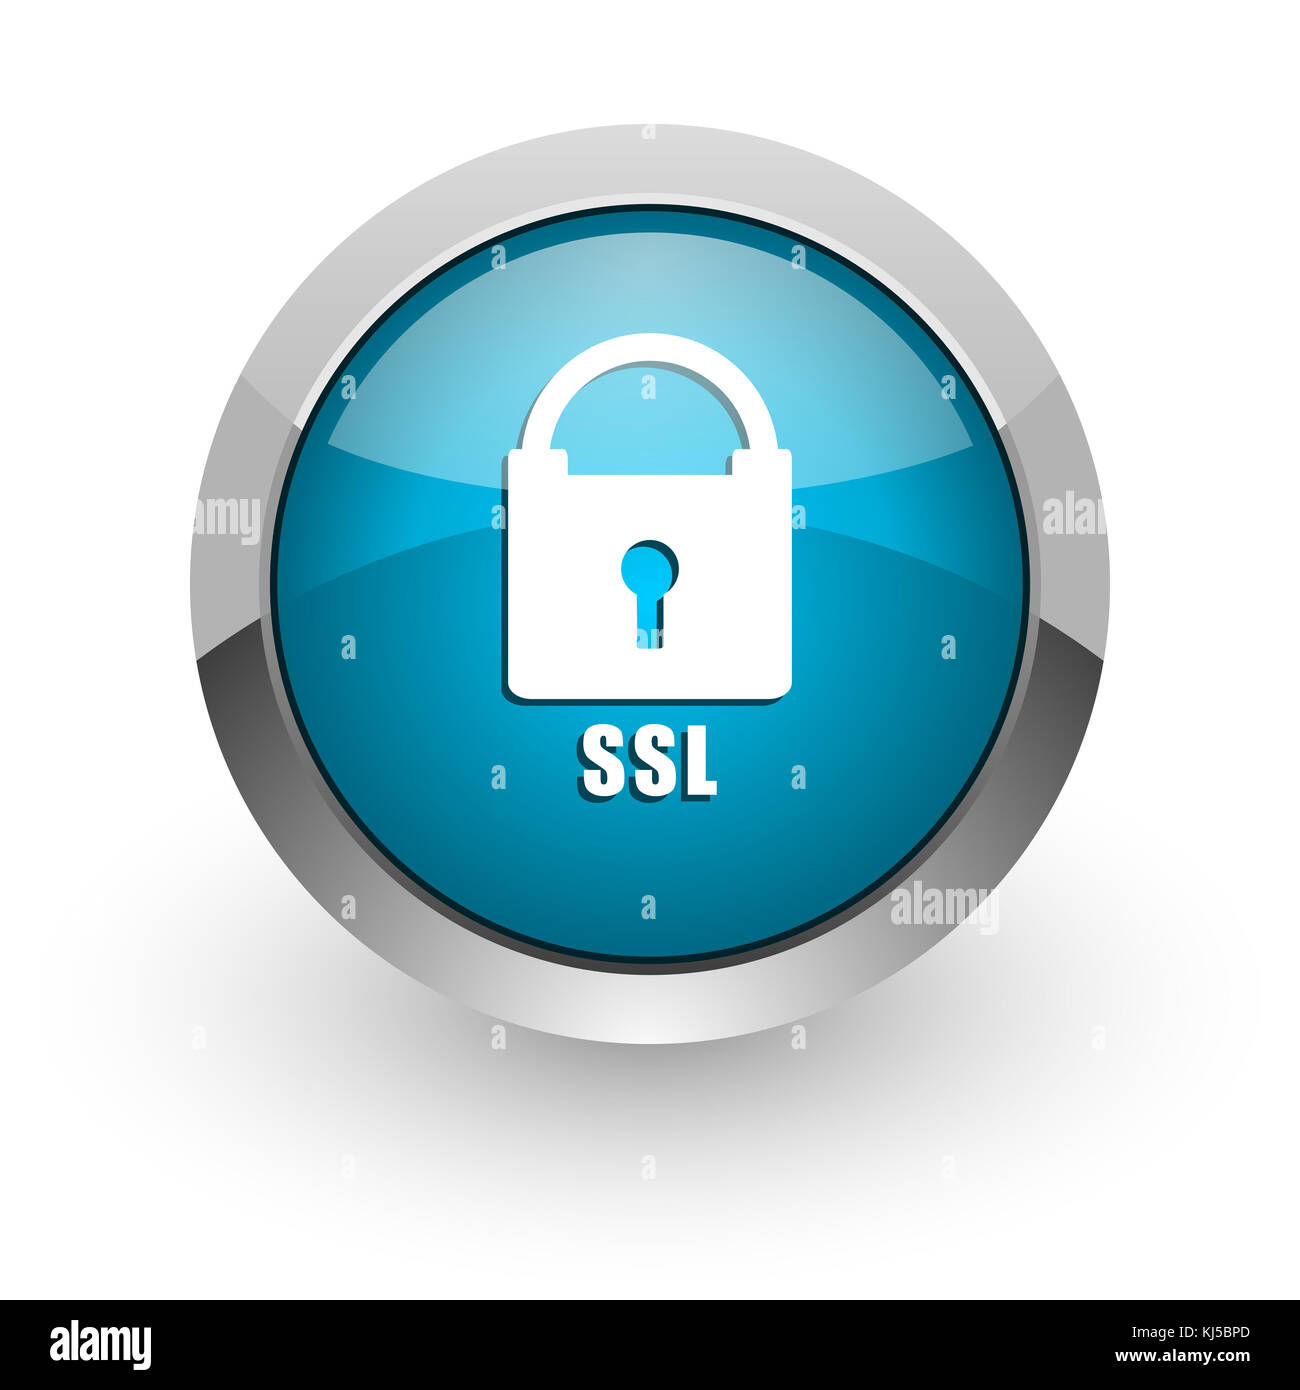 CSL bleu argent métallisé bordure web et icône de téléphone portable sur fond blanc avec ombre Banque D'Images